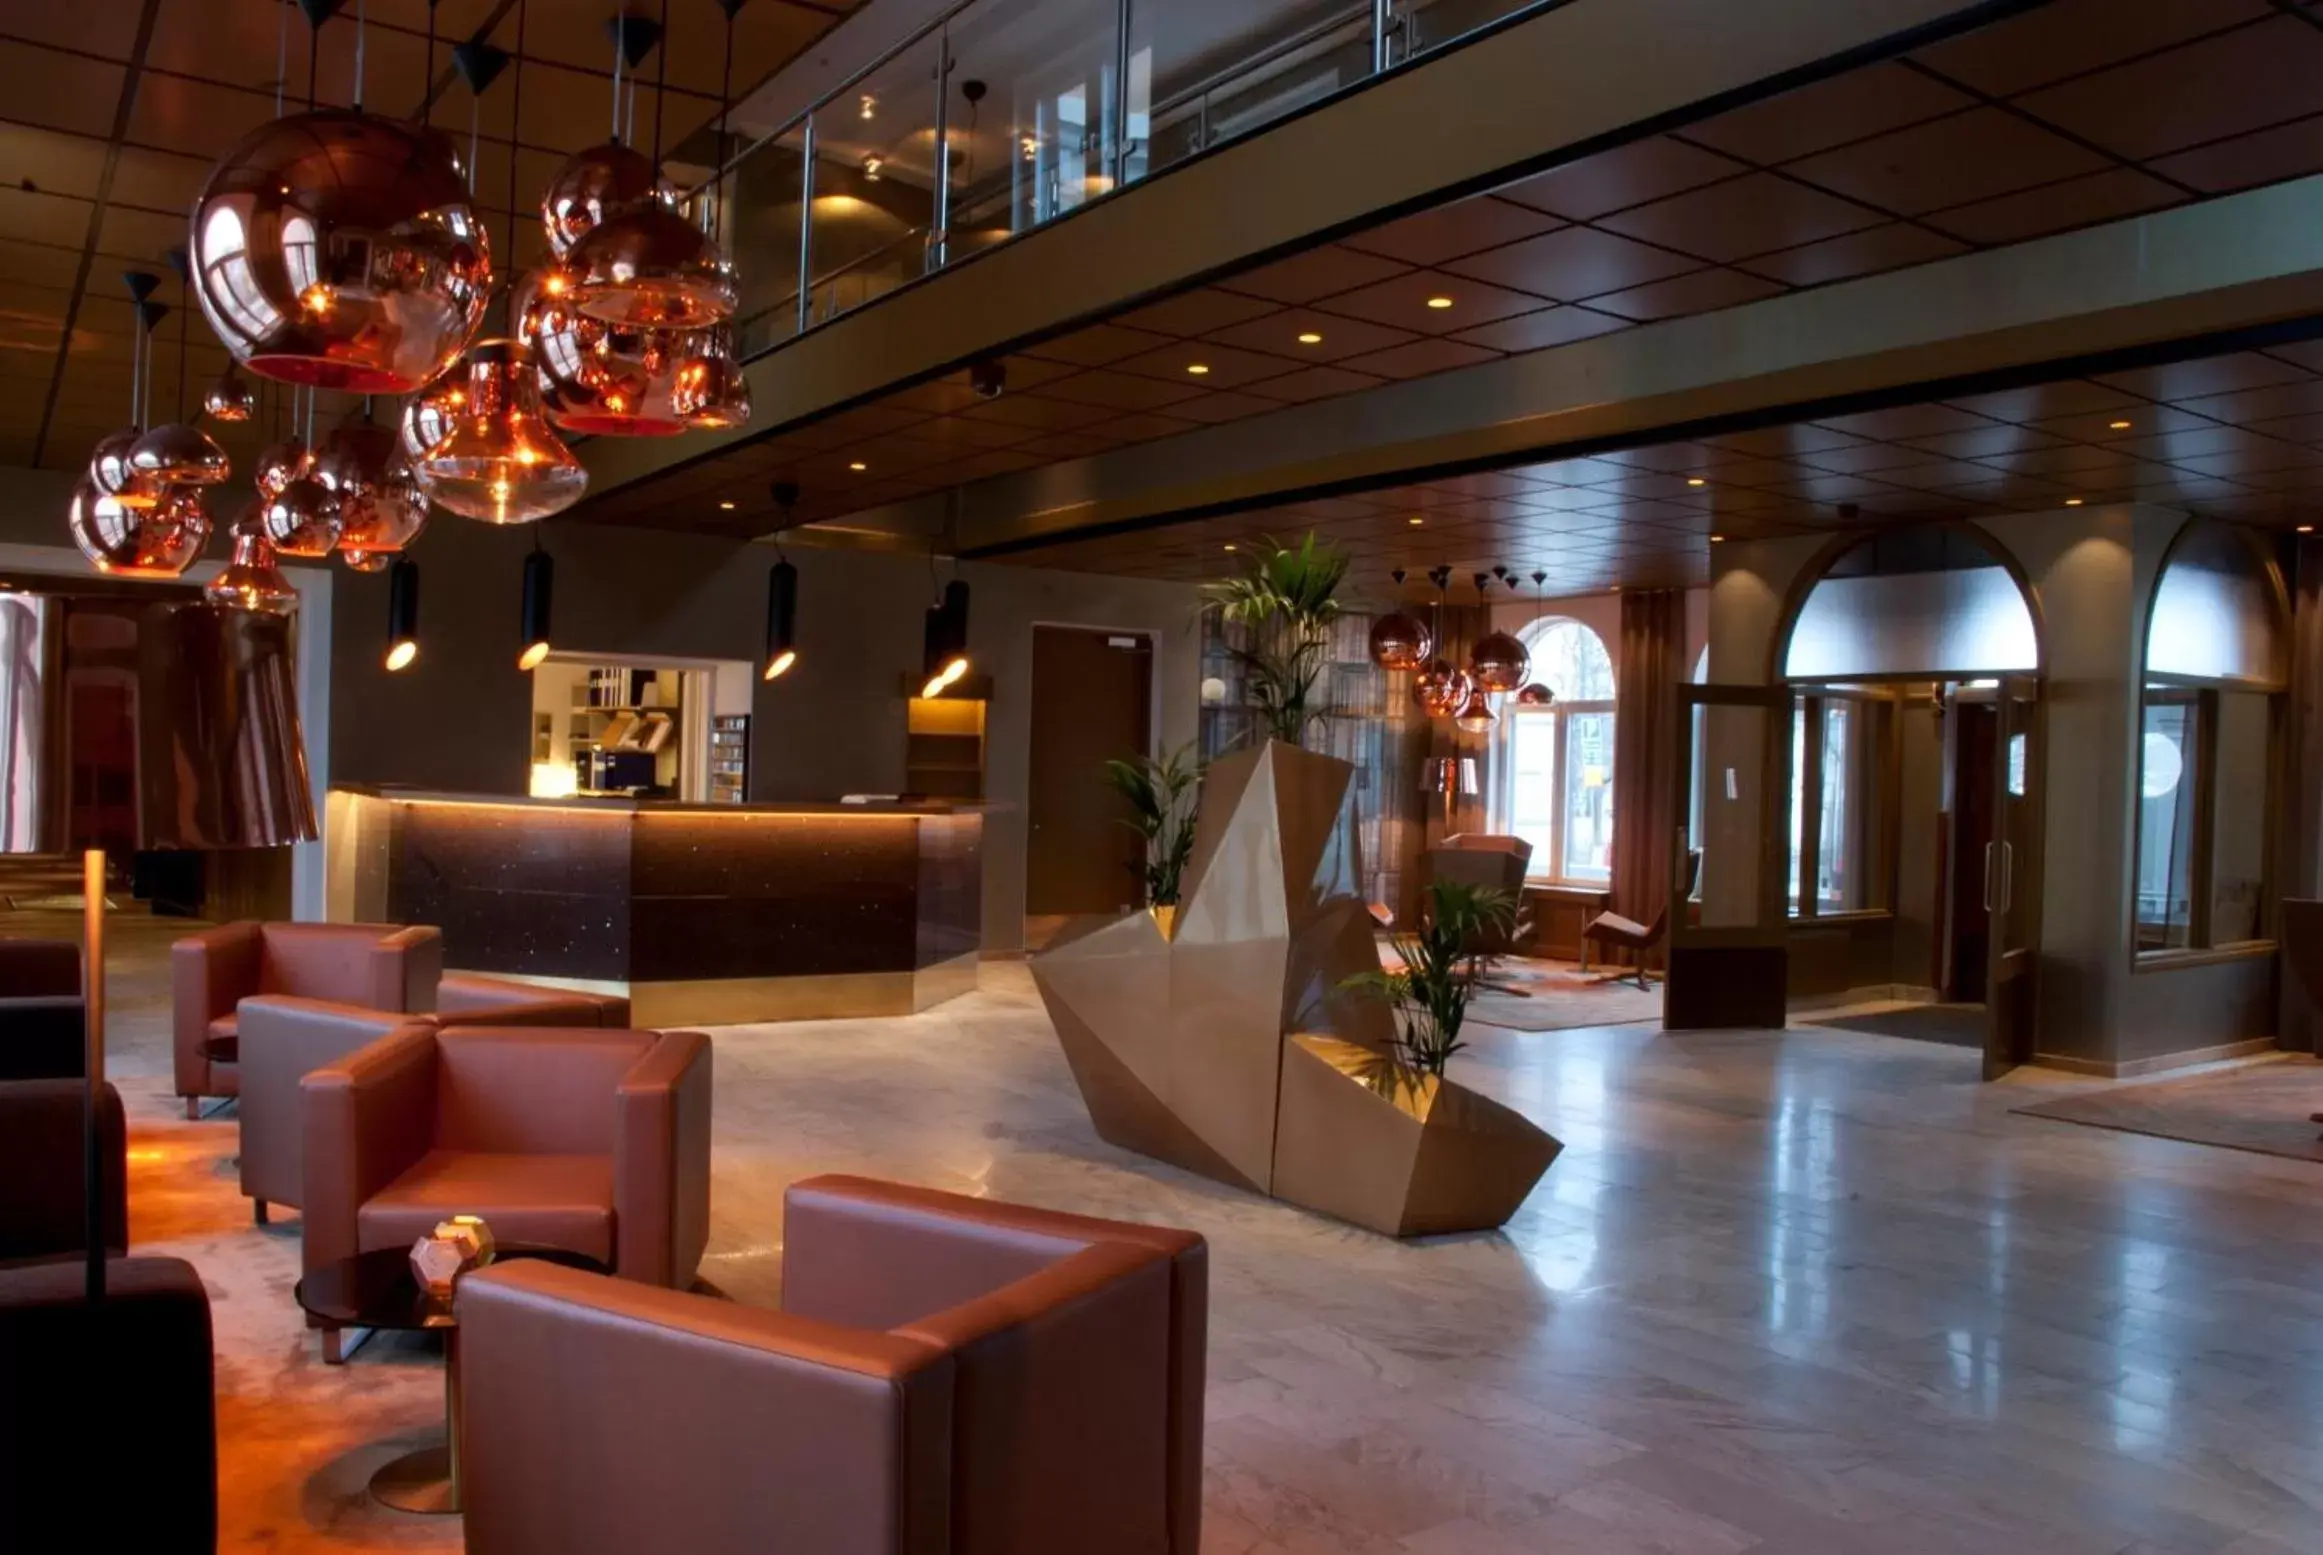 Lobby or reception, Lobby/Reception in Quality Hotel Statt